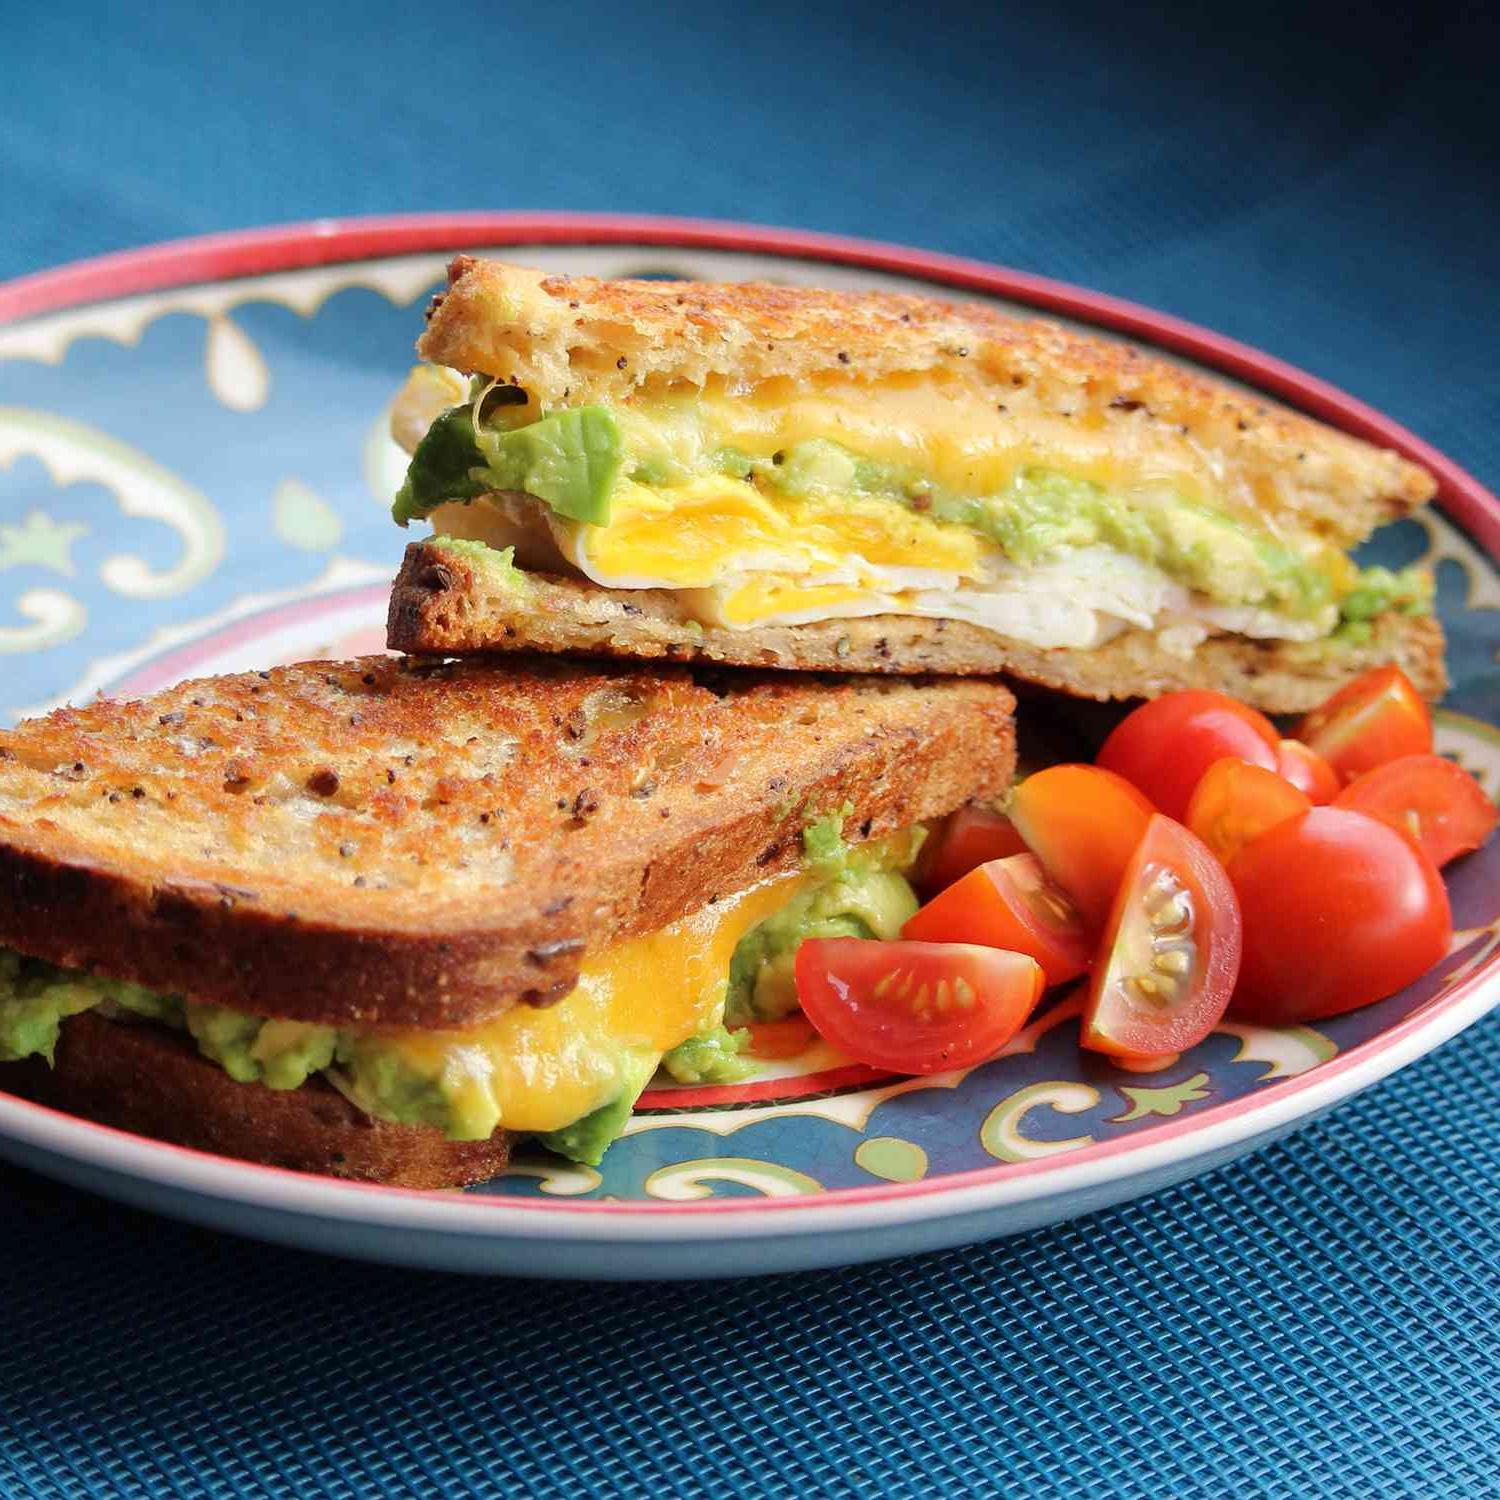 Avocado Breakfast Sandwich Photo 5